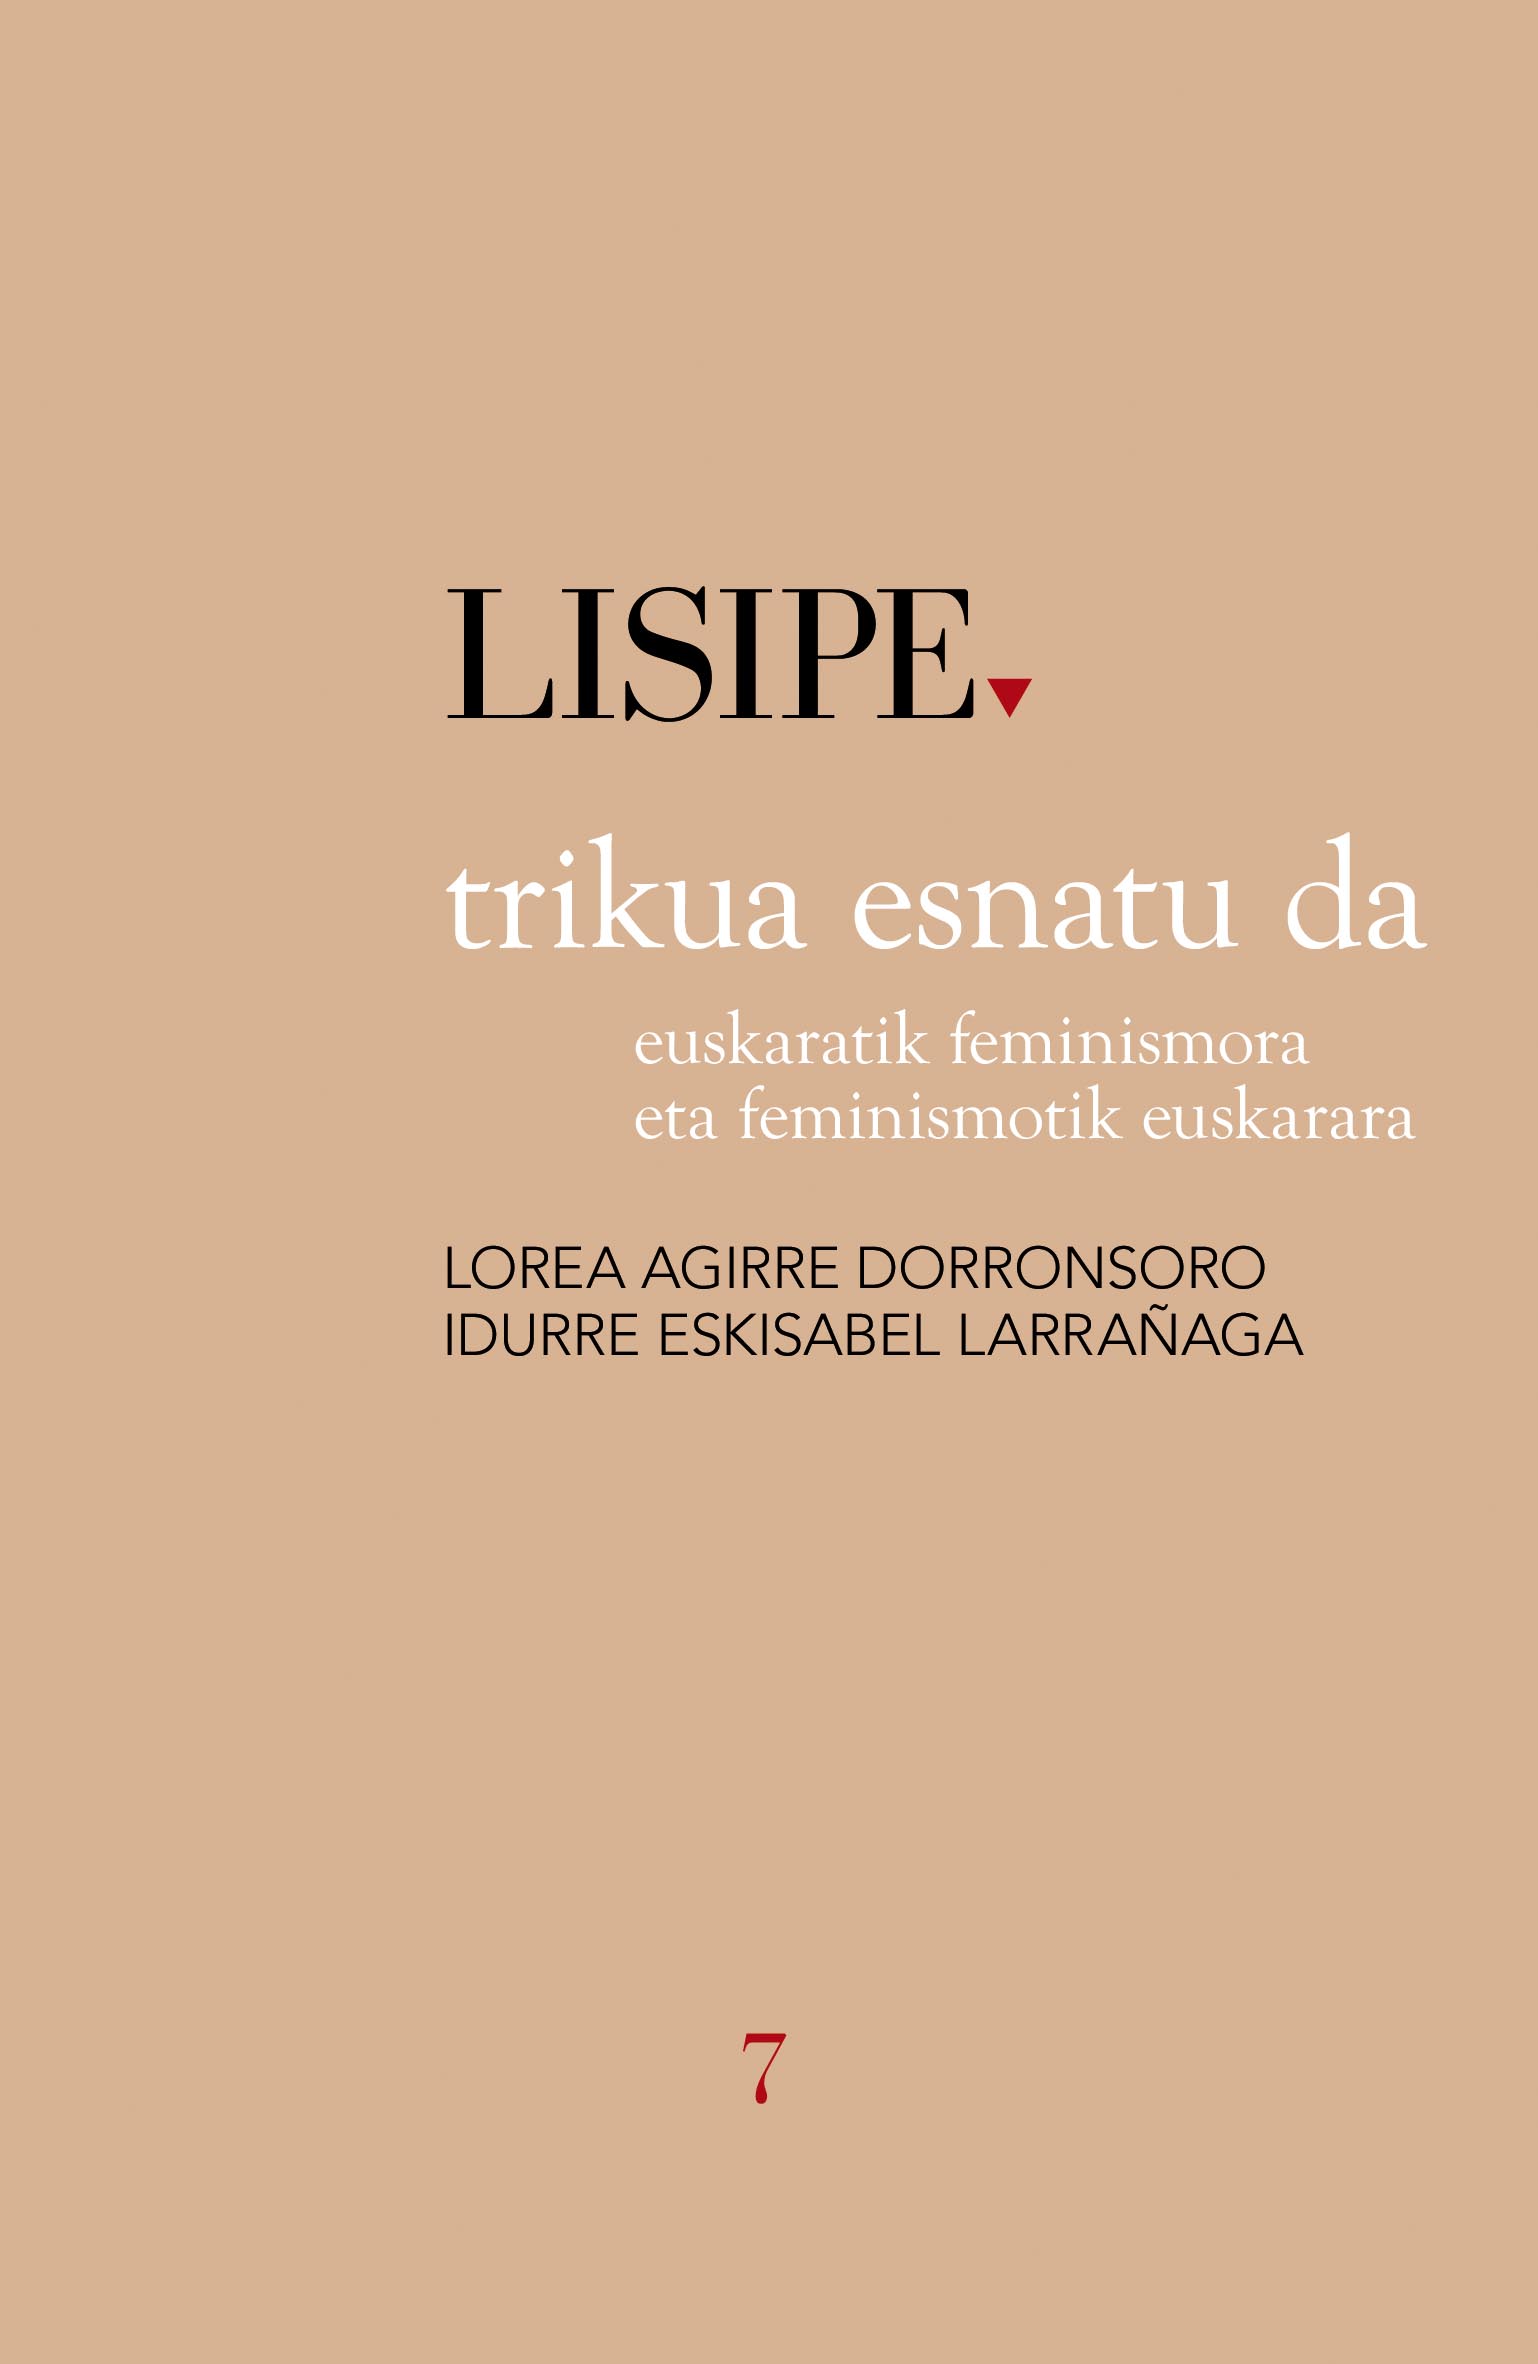 Lorea Aguirre Dorronsoro, Idurre Eskisabel Larrañaga: Trikua esnatu da (Paperback, Euskara language, 2019, Susa)